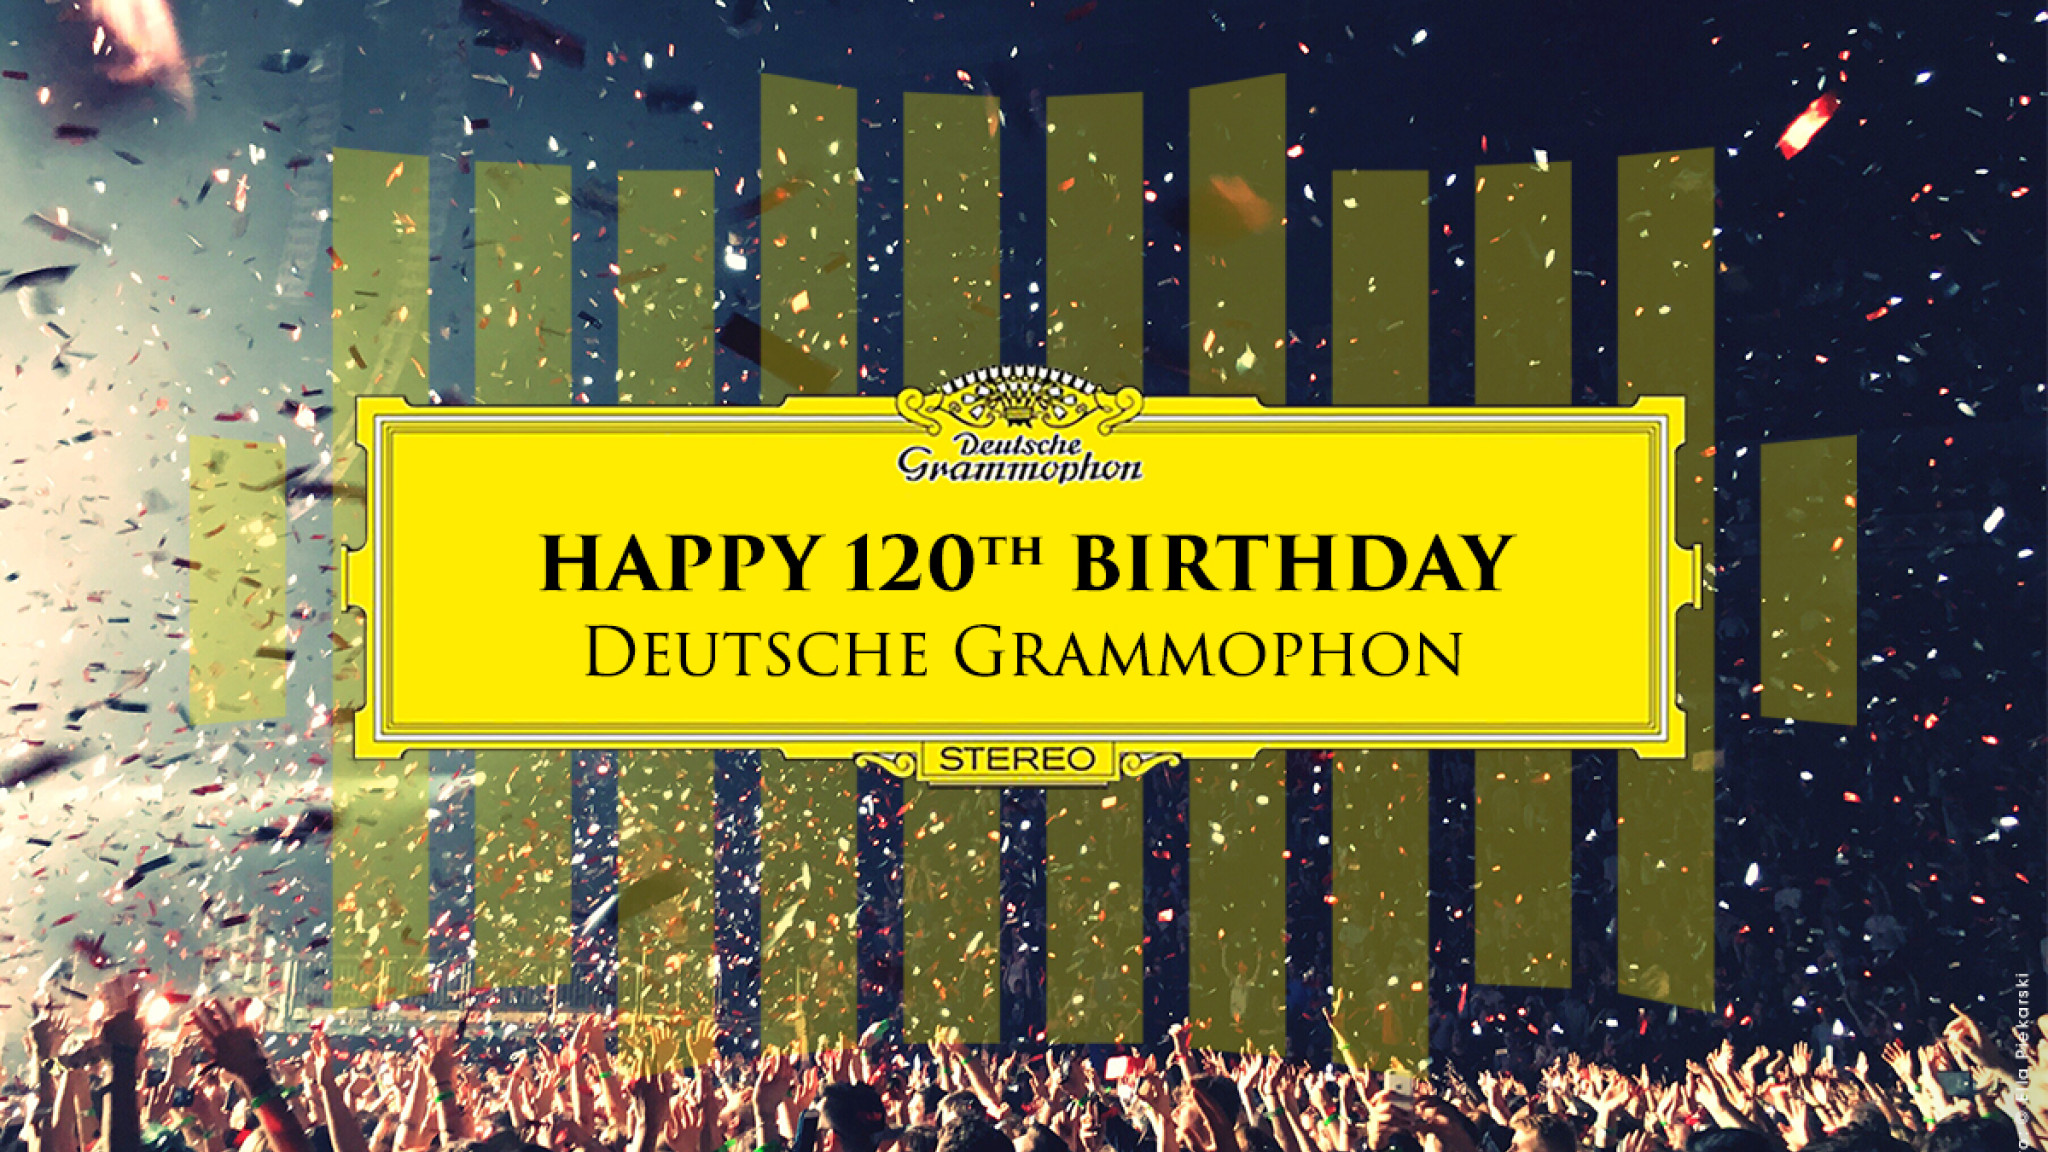 Happy 120th Birthday Deutsche Grammophon